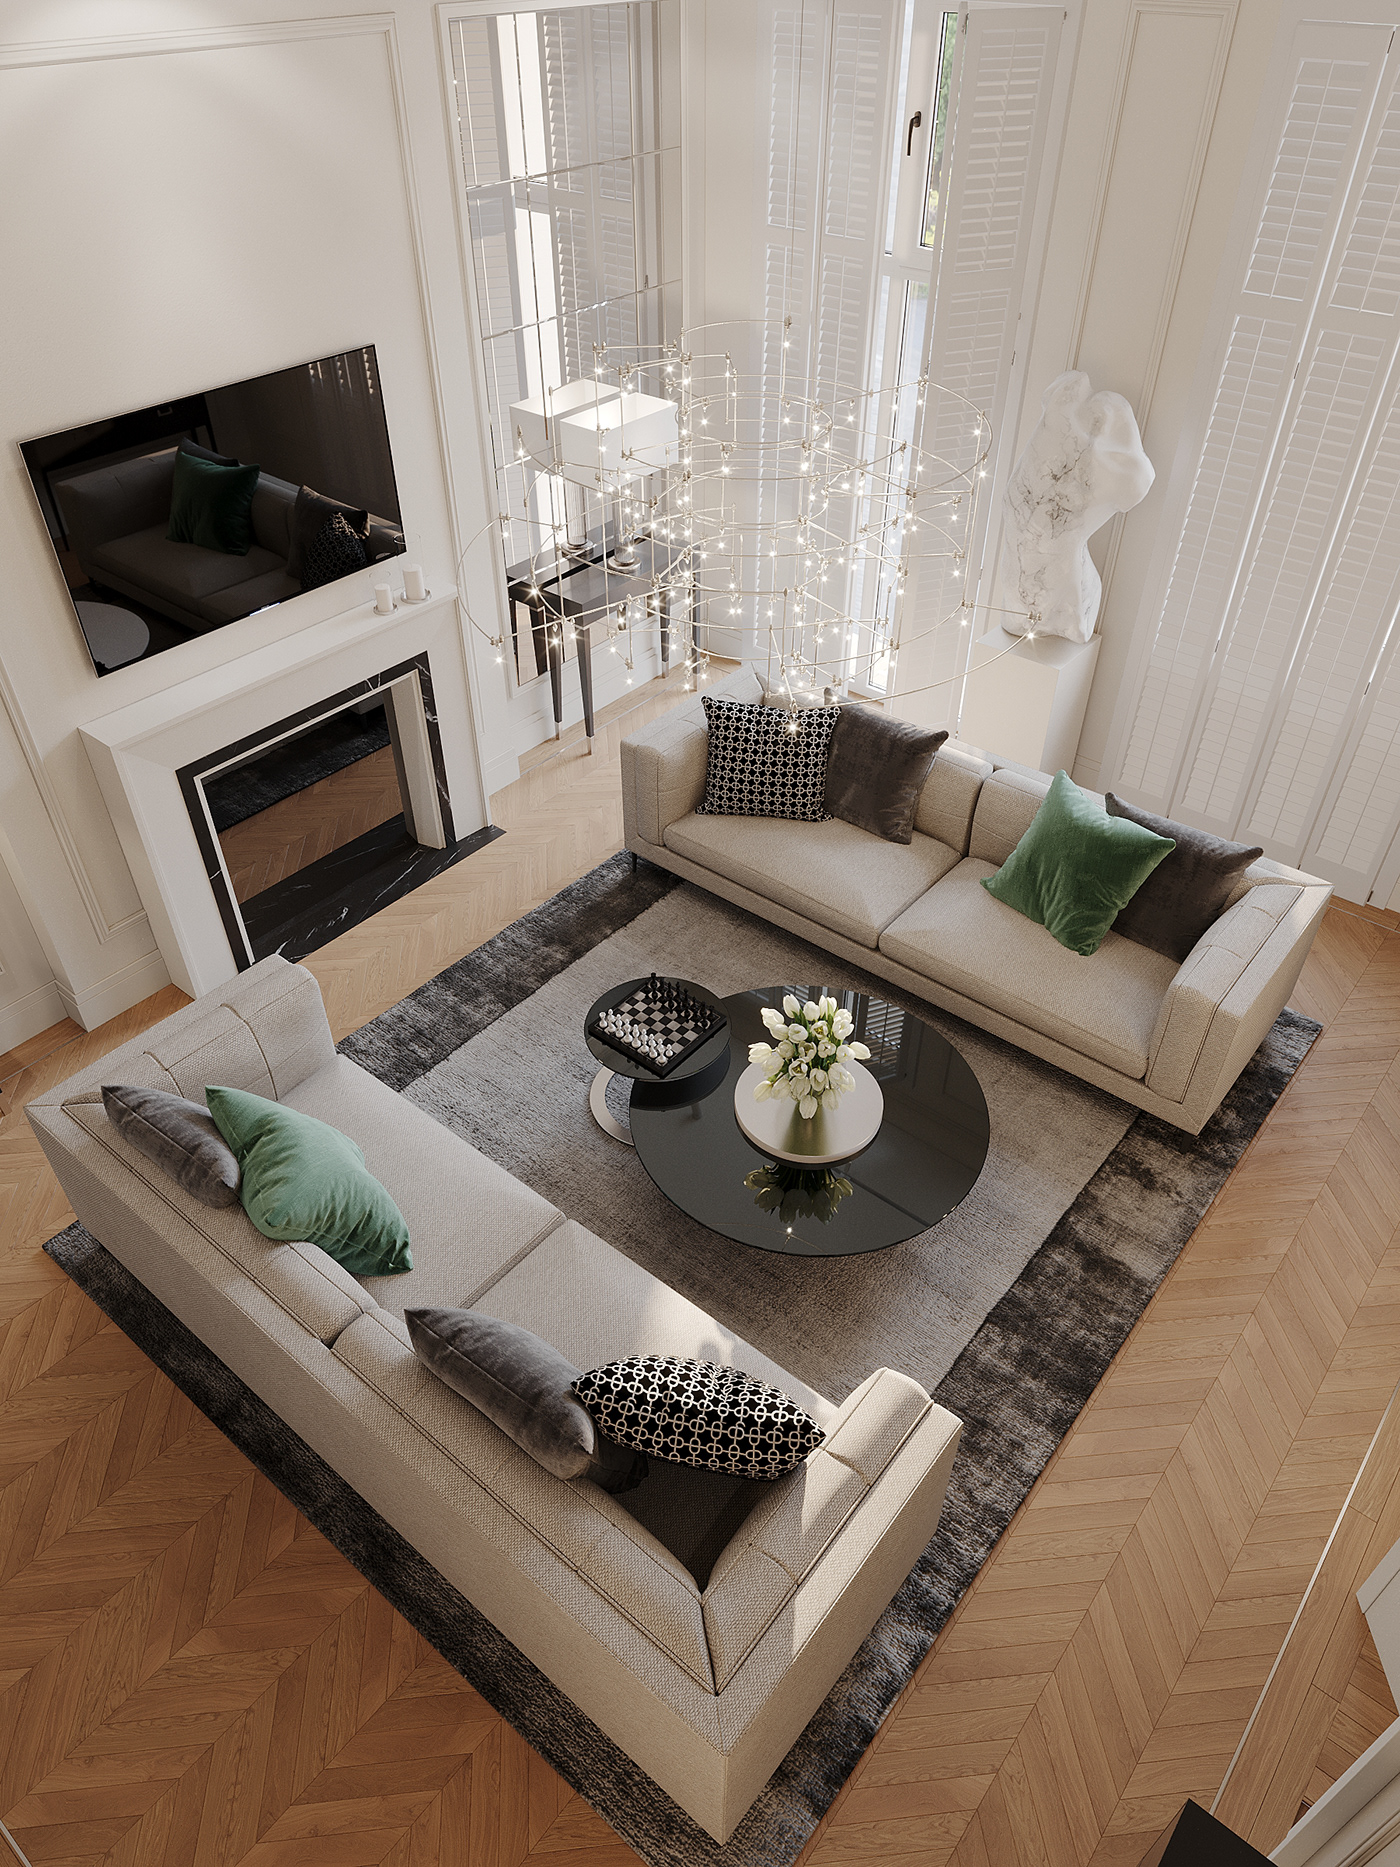 3D 3ds max architecture CGI corona house Interior interior design  Render visualization